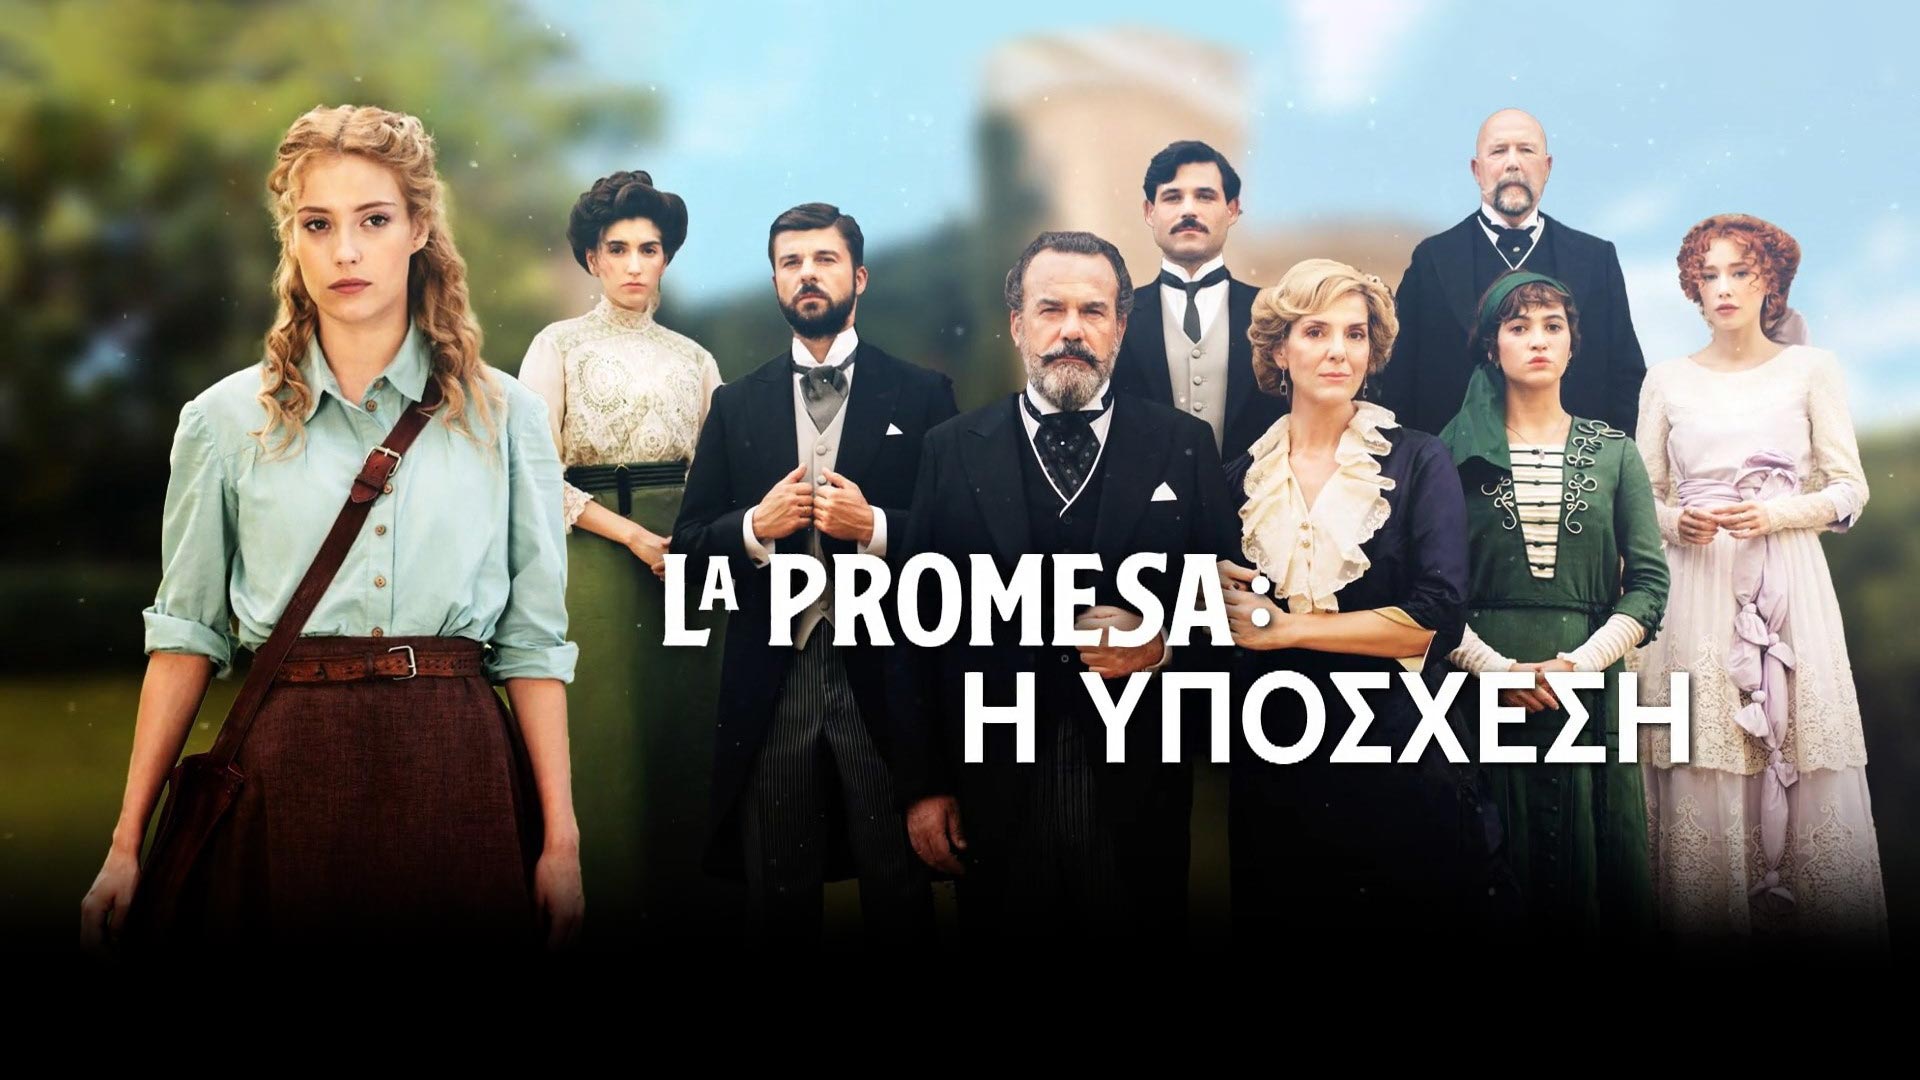 Δελτίο τύπου - La Promesa - Η υπόσχεση η νέα καθημερινή σειρά του OPEN